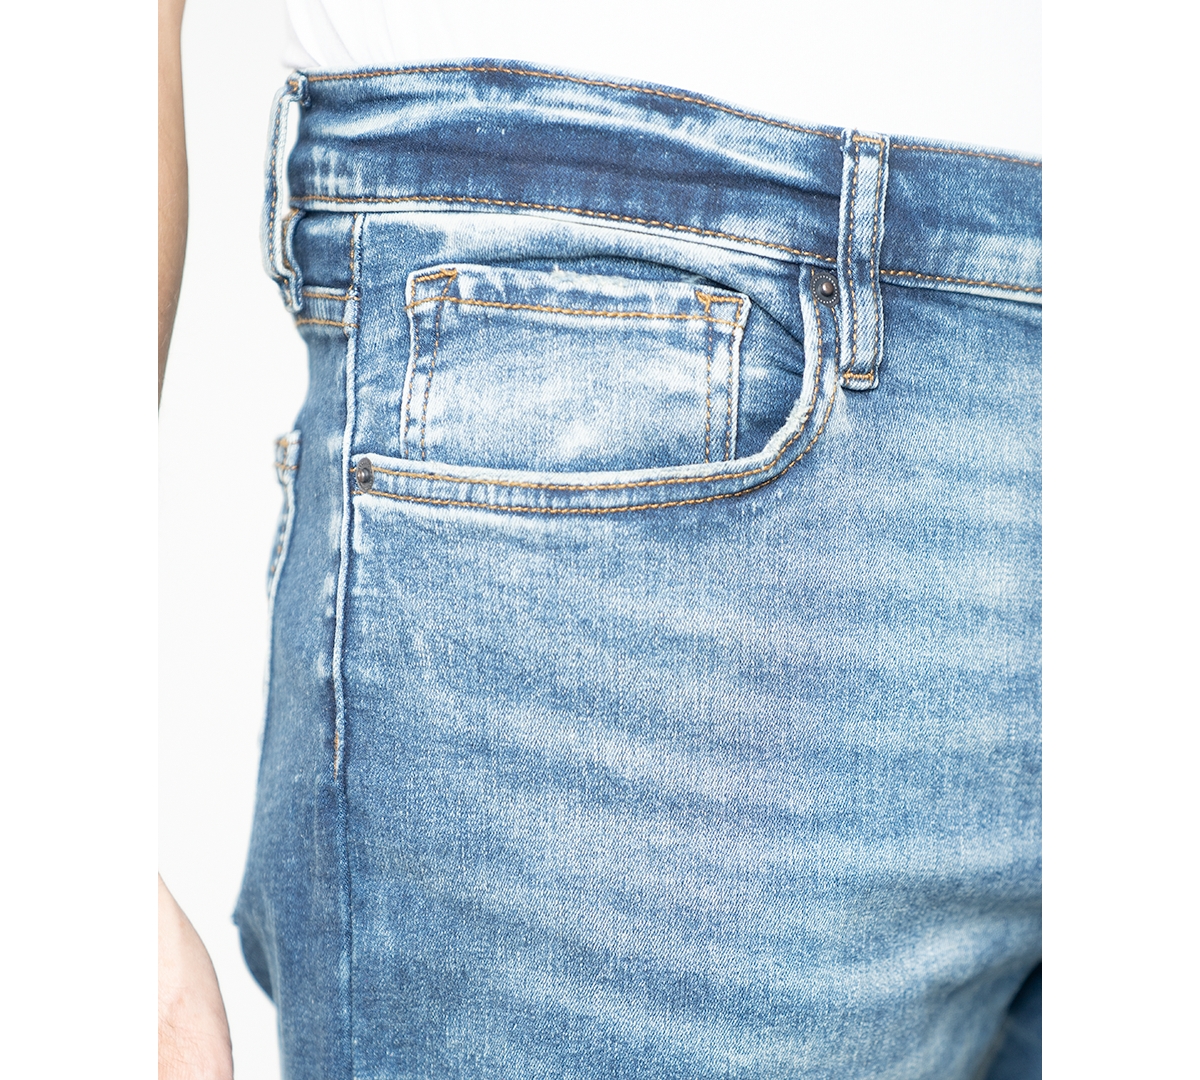 Shop Lazer Men's Slim-fit Five-pocket Jeans In Oliver